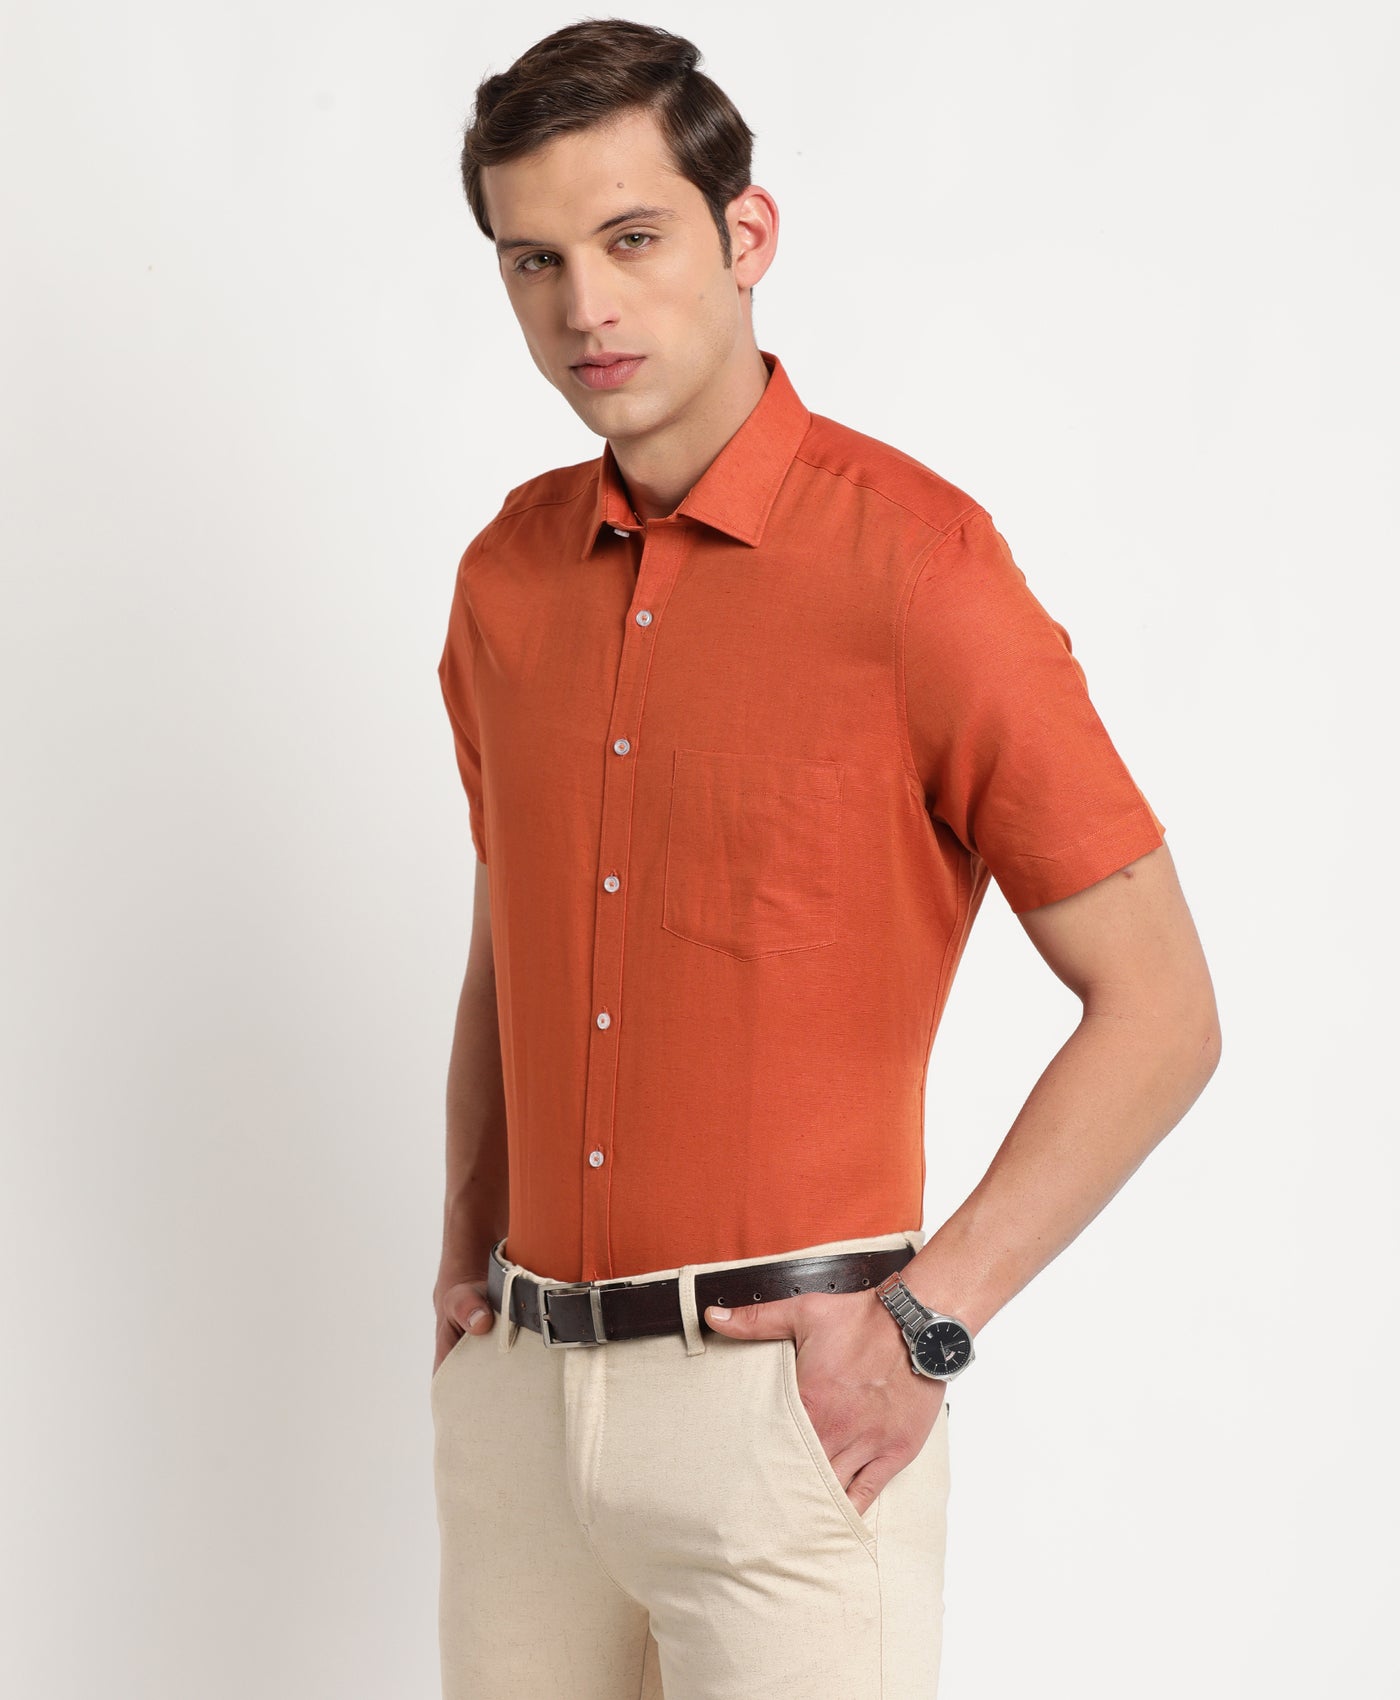 Cotton Linen Rust Plain Regular Fit Half Sleeve Formal Shirt